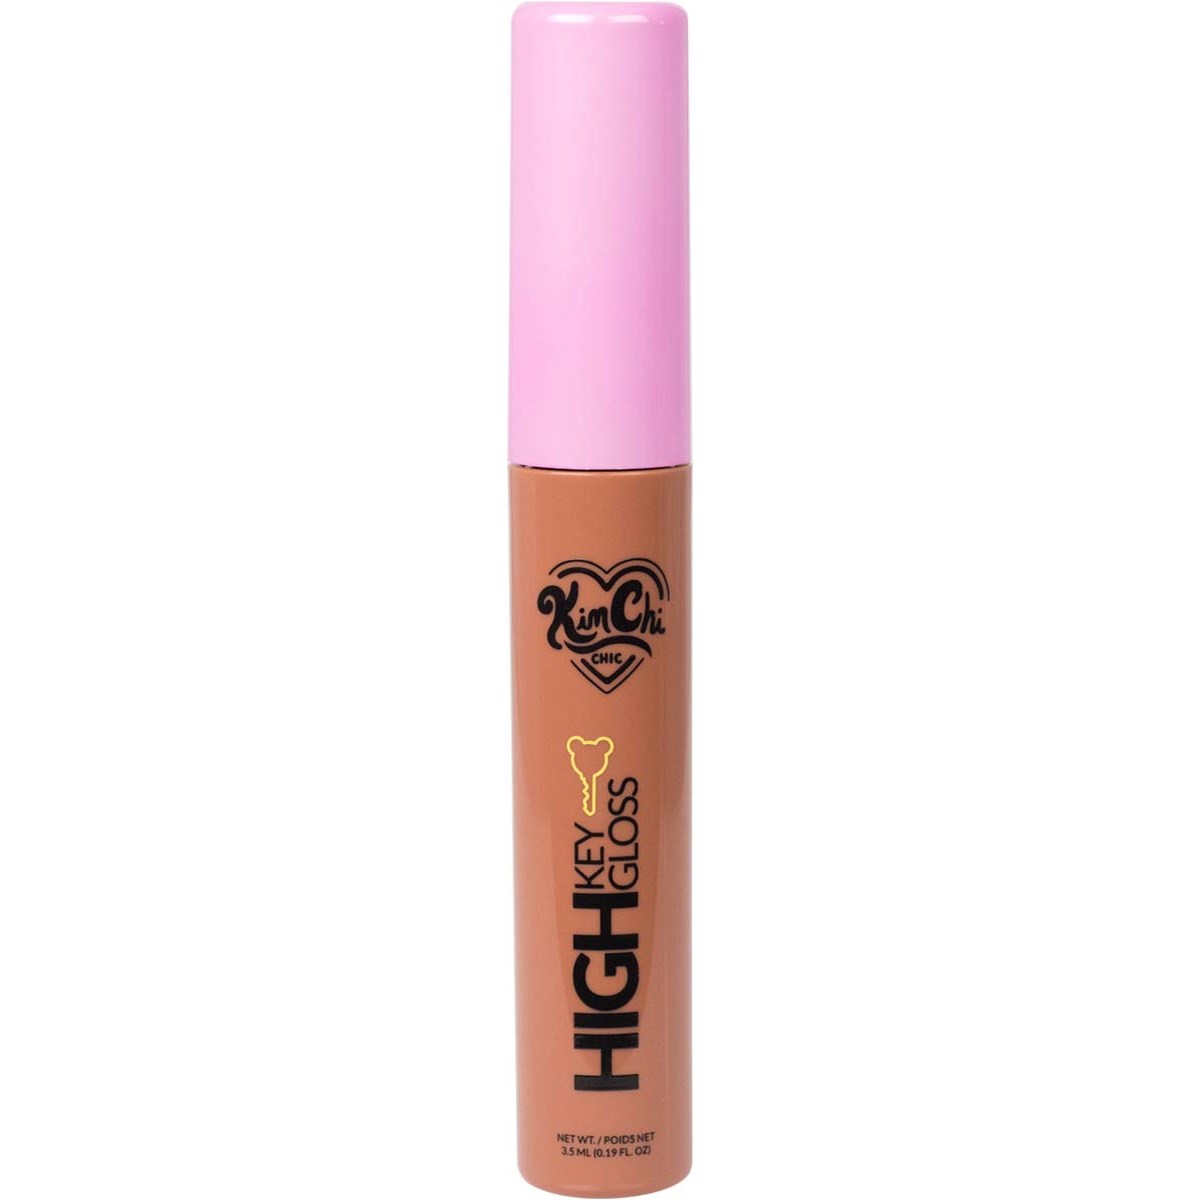 KimChi Chic High Key Gloss Full Coverage Lipgloss Natural